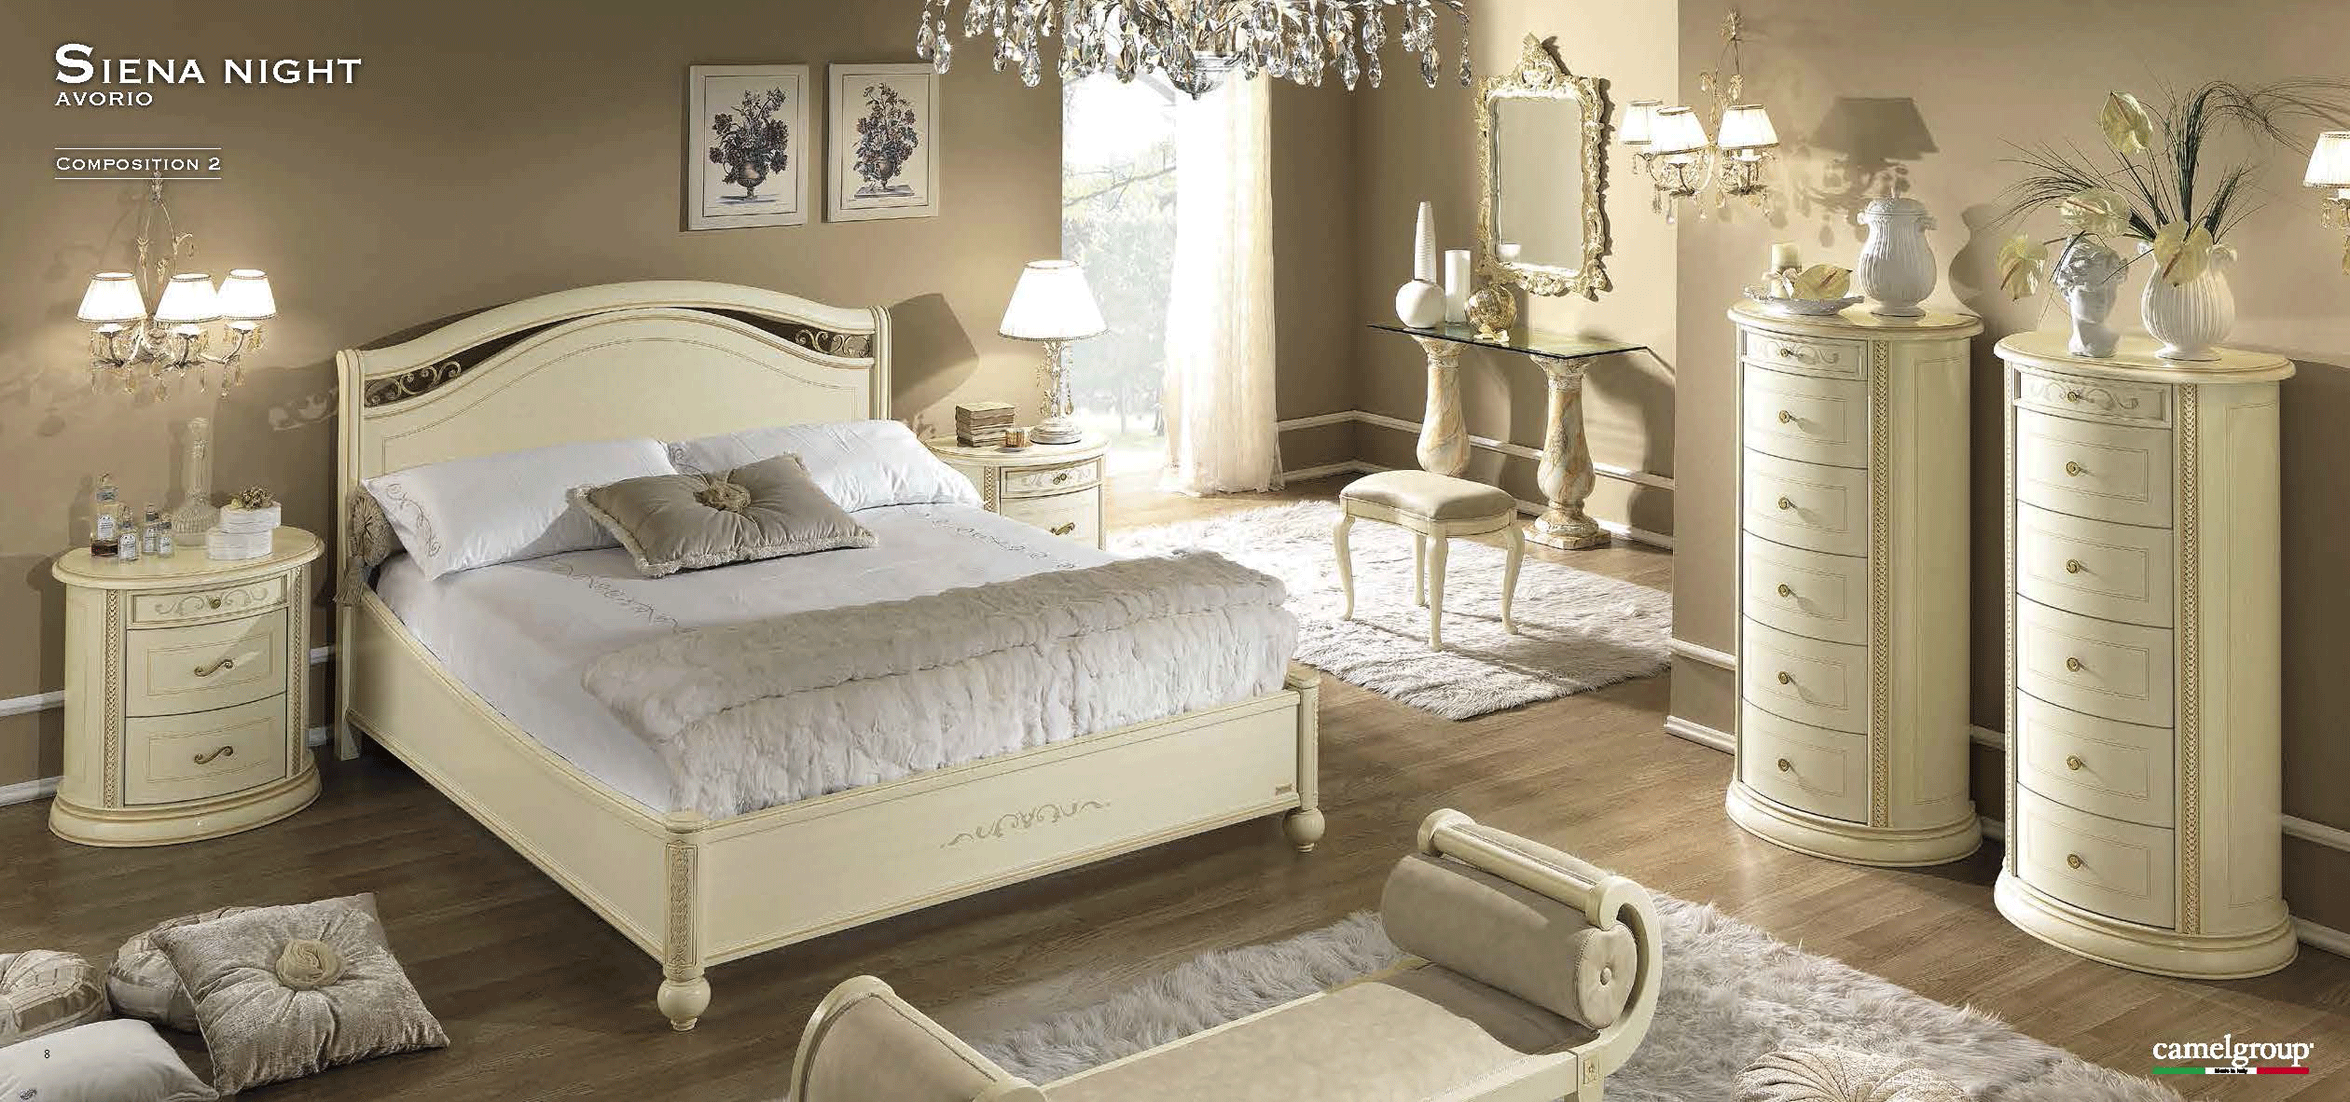 Bedroom Furniture Nightstands Siena Night Ivory